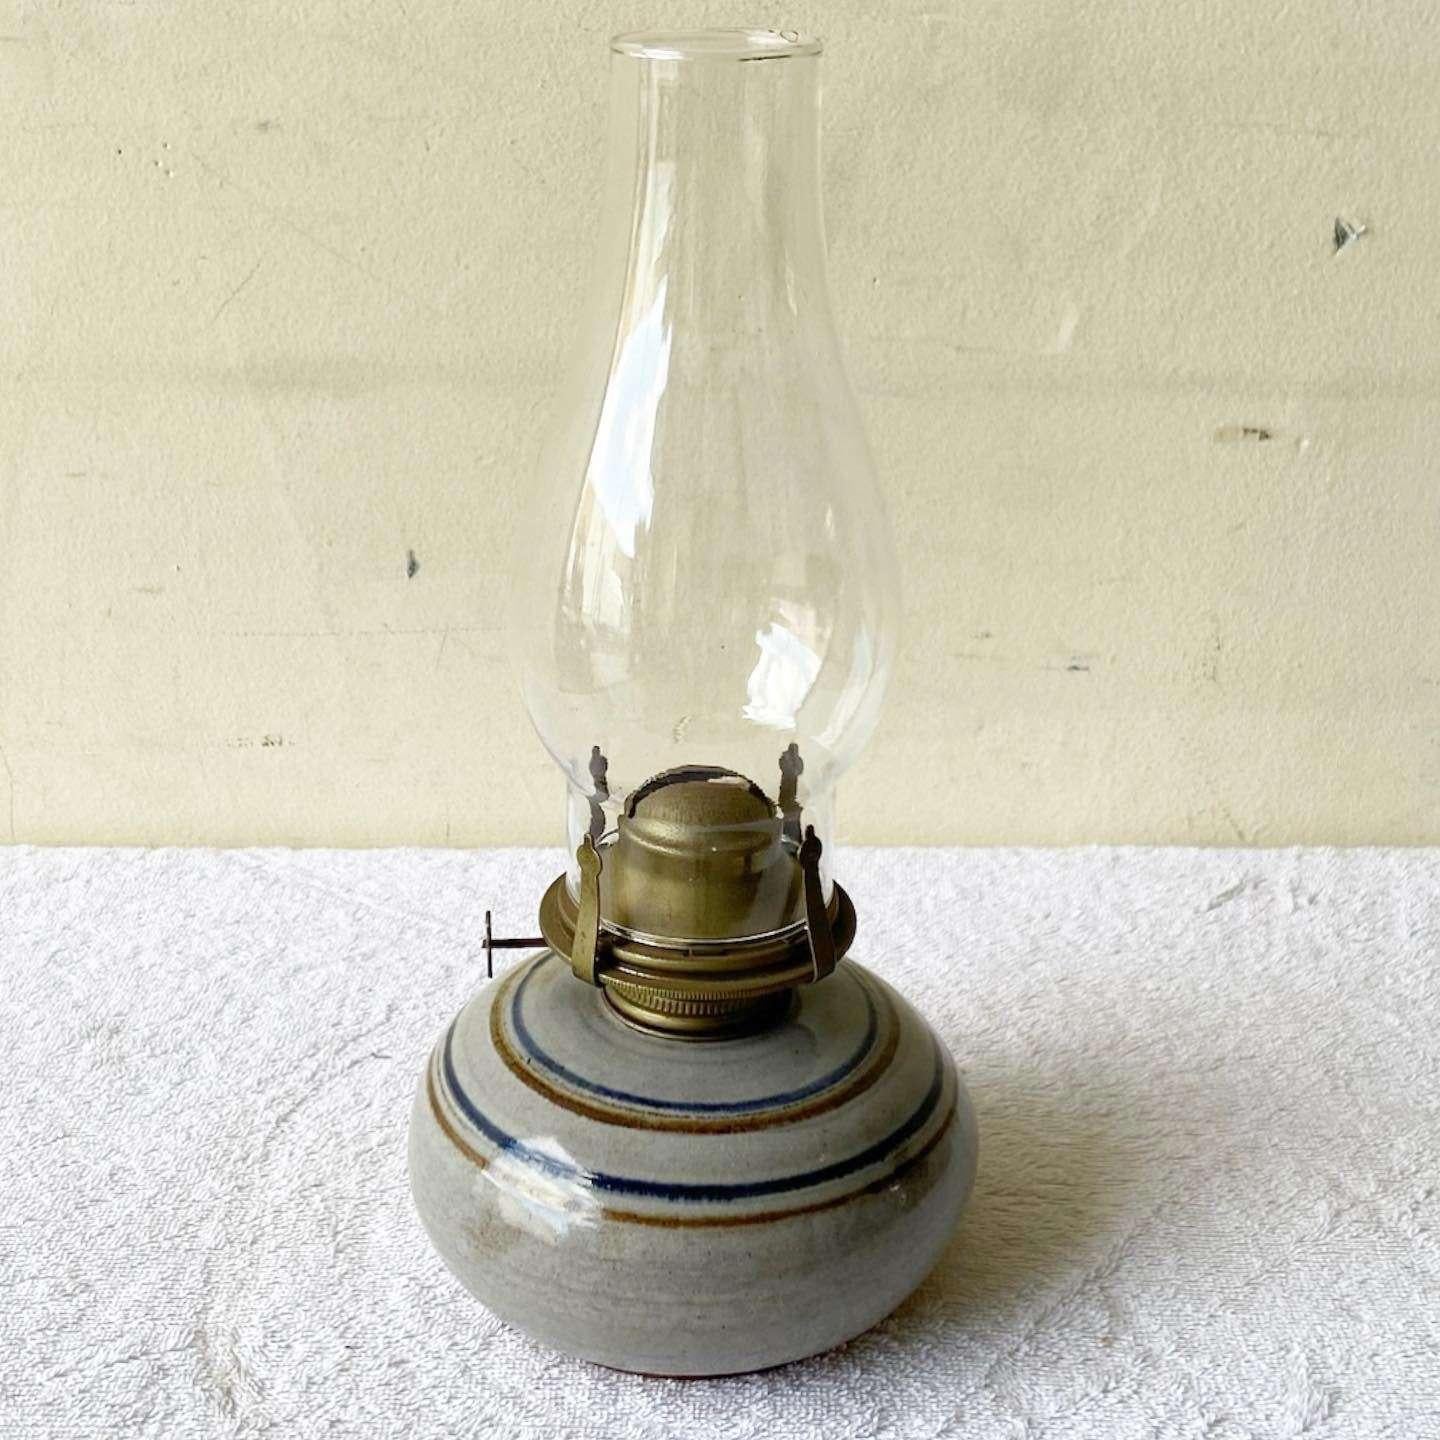 Merveilleuse lampe à huile vintage en poterie du milieu du siècle dernier. Elle est dotée d'une longue mèche fraîche, d'un plateau en verre et d'une finition grise avec des rayures brunes et bleues.